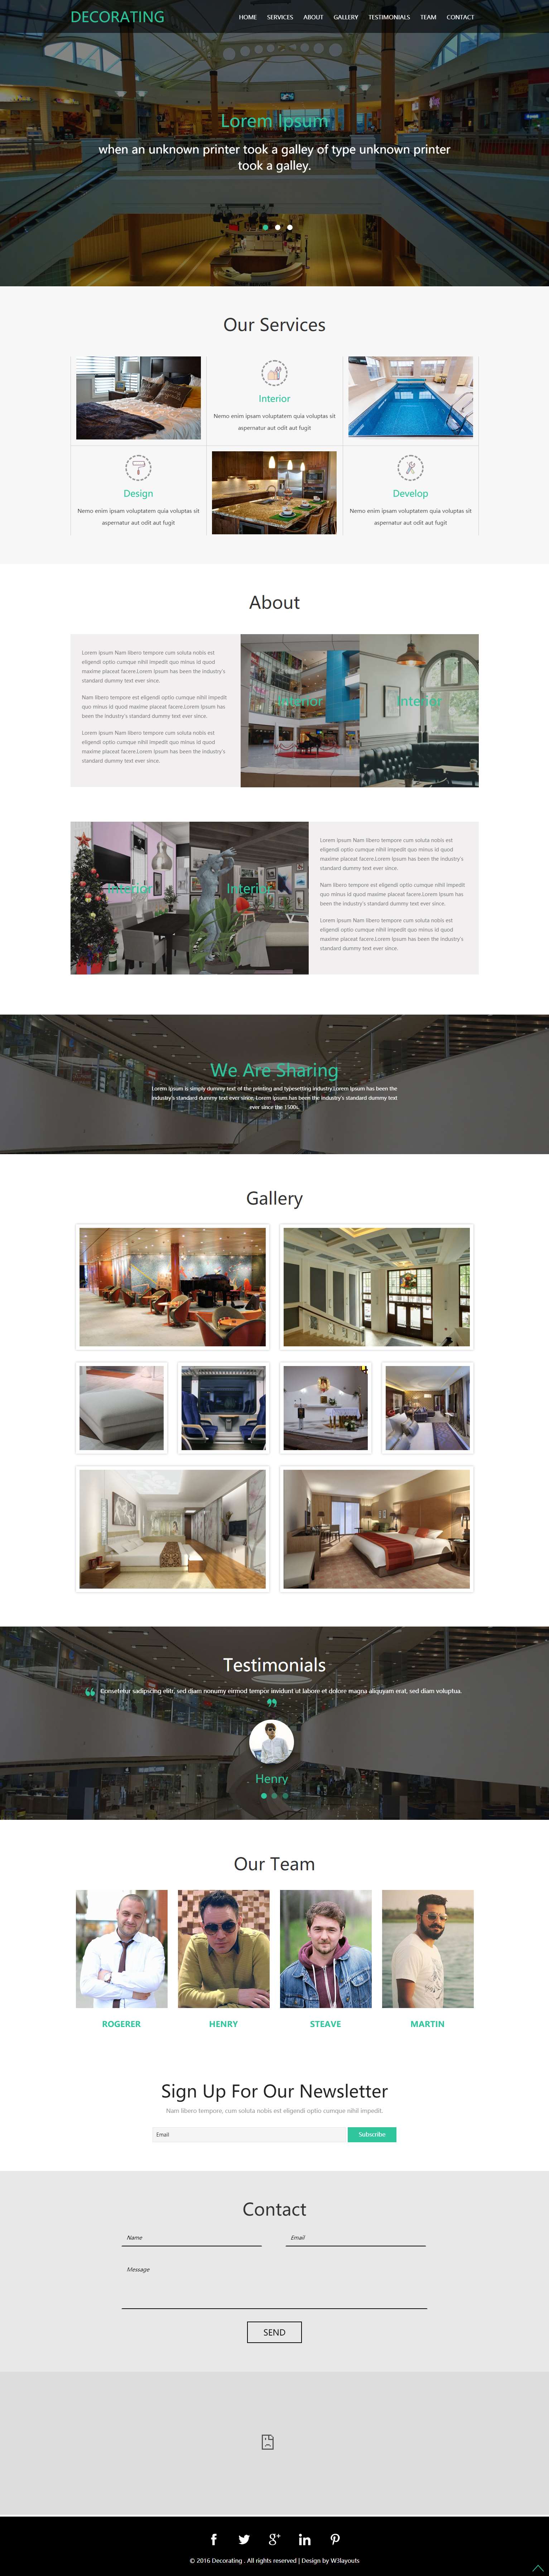 绿色简洁风格的商场室内设计整站网站源码下载